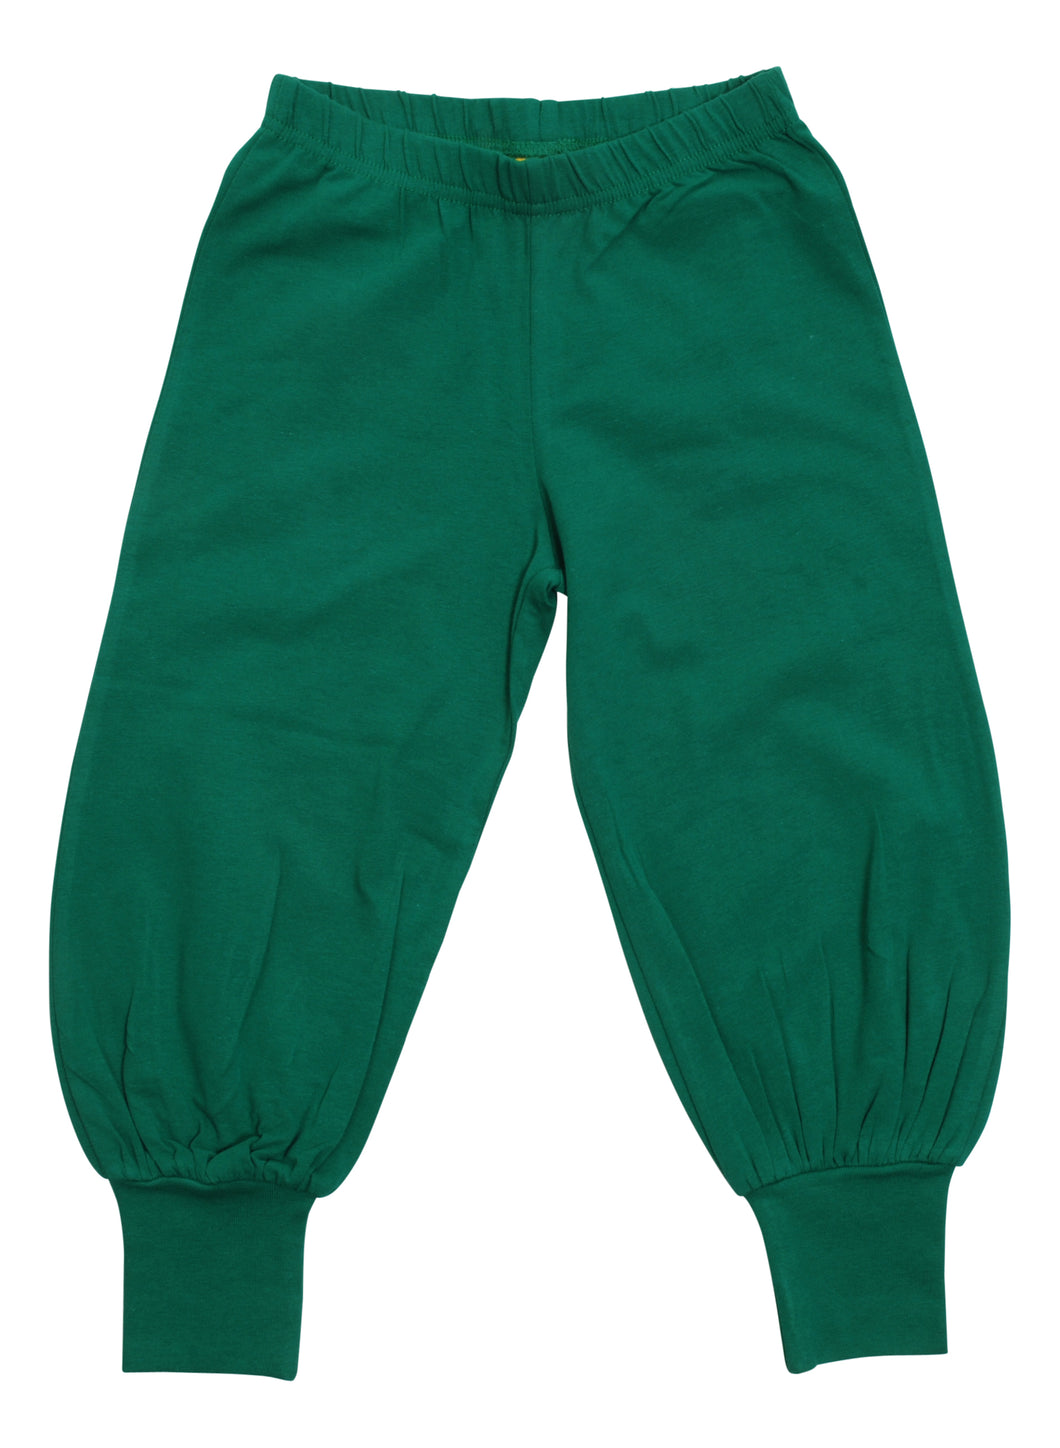 Duns - Baggy Pants - Cadmium Green